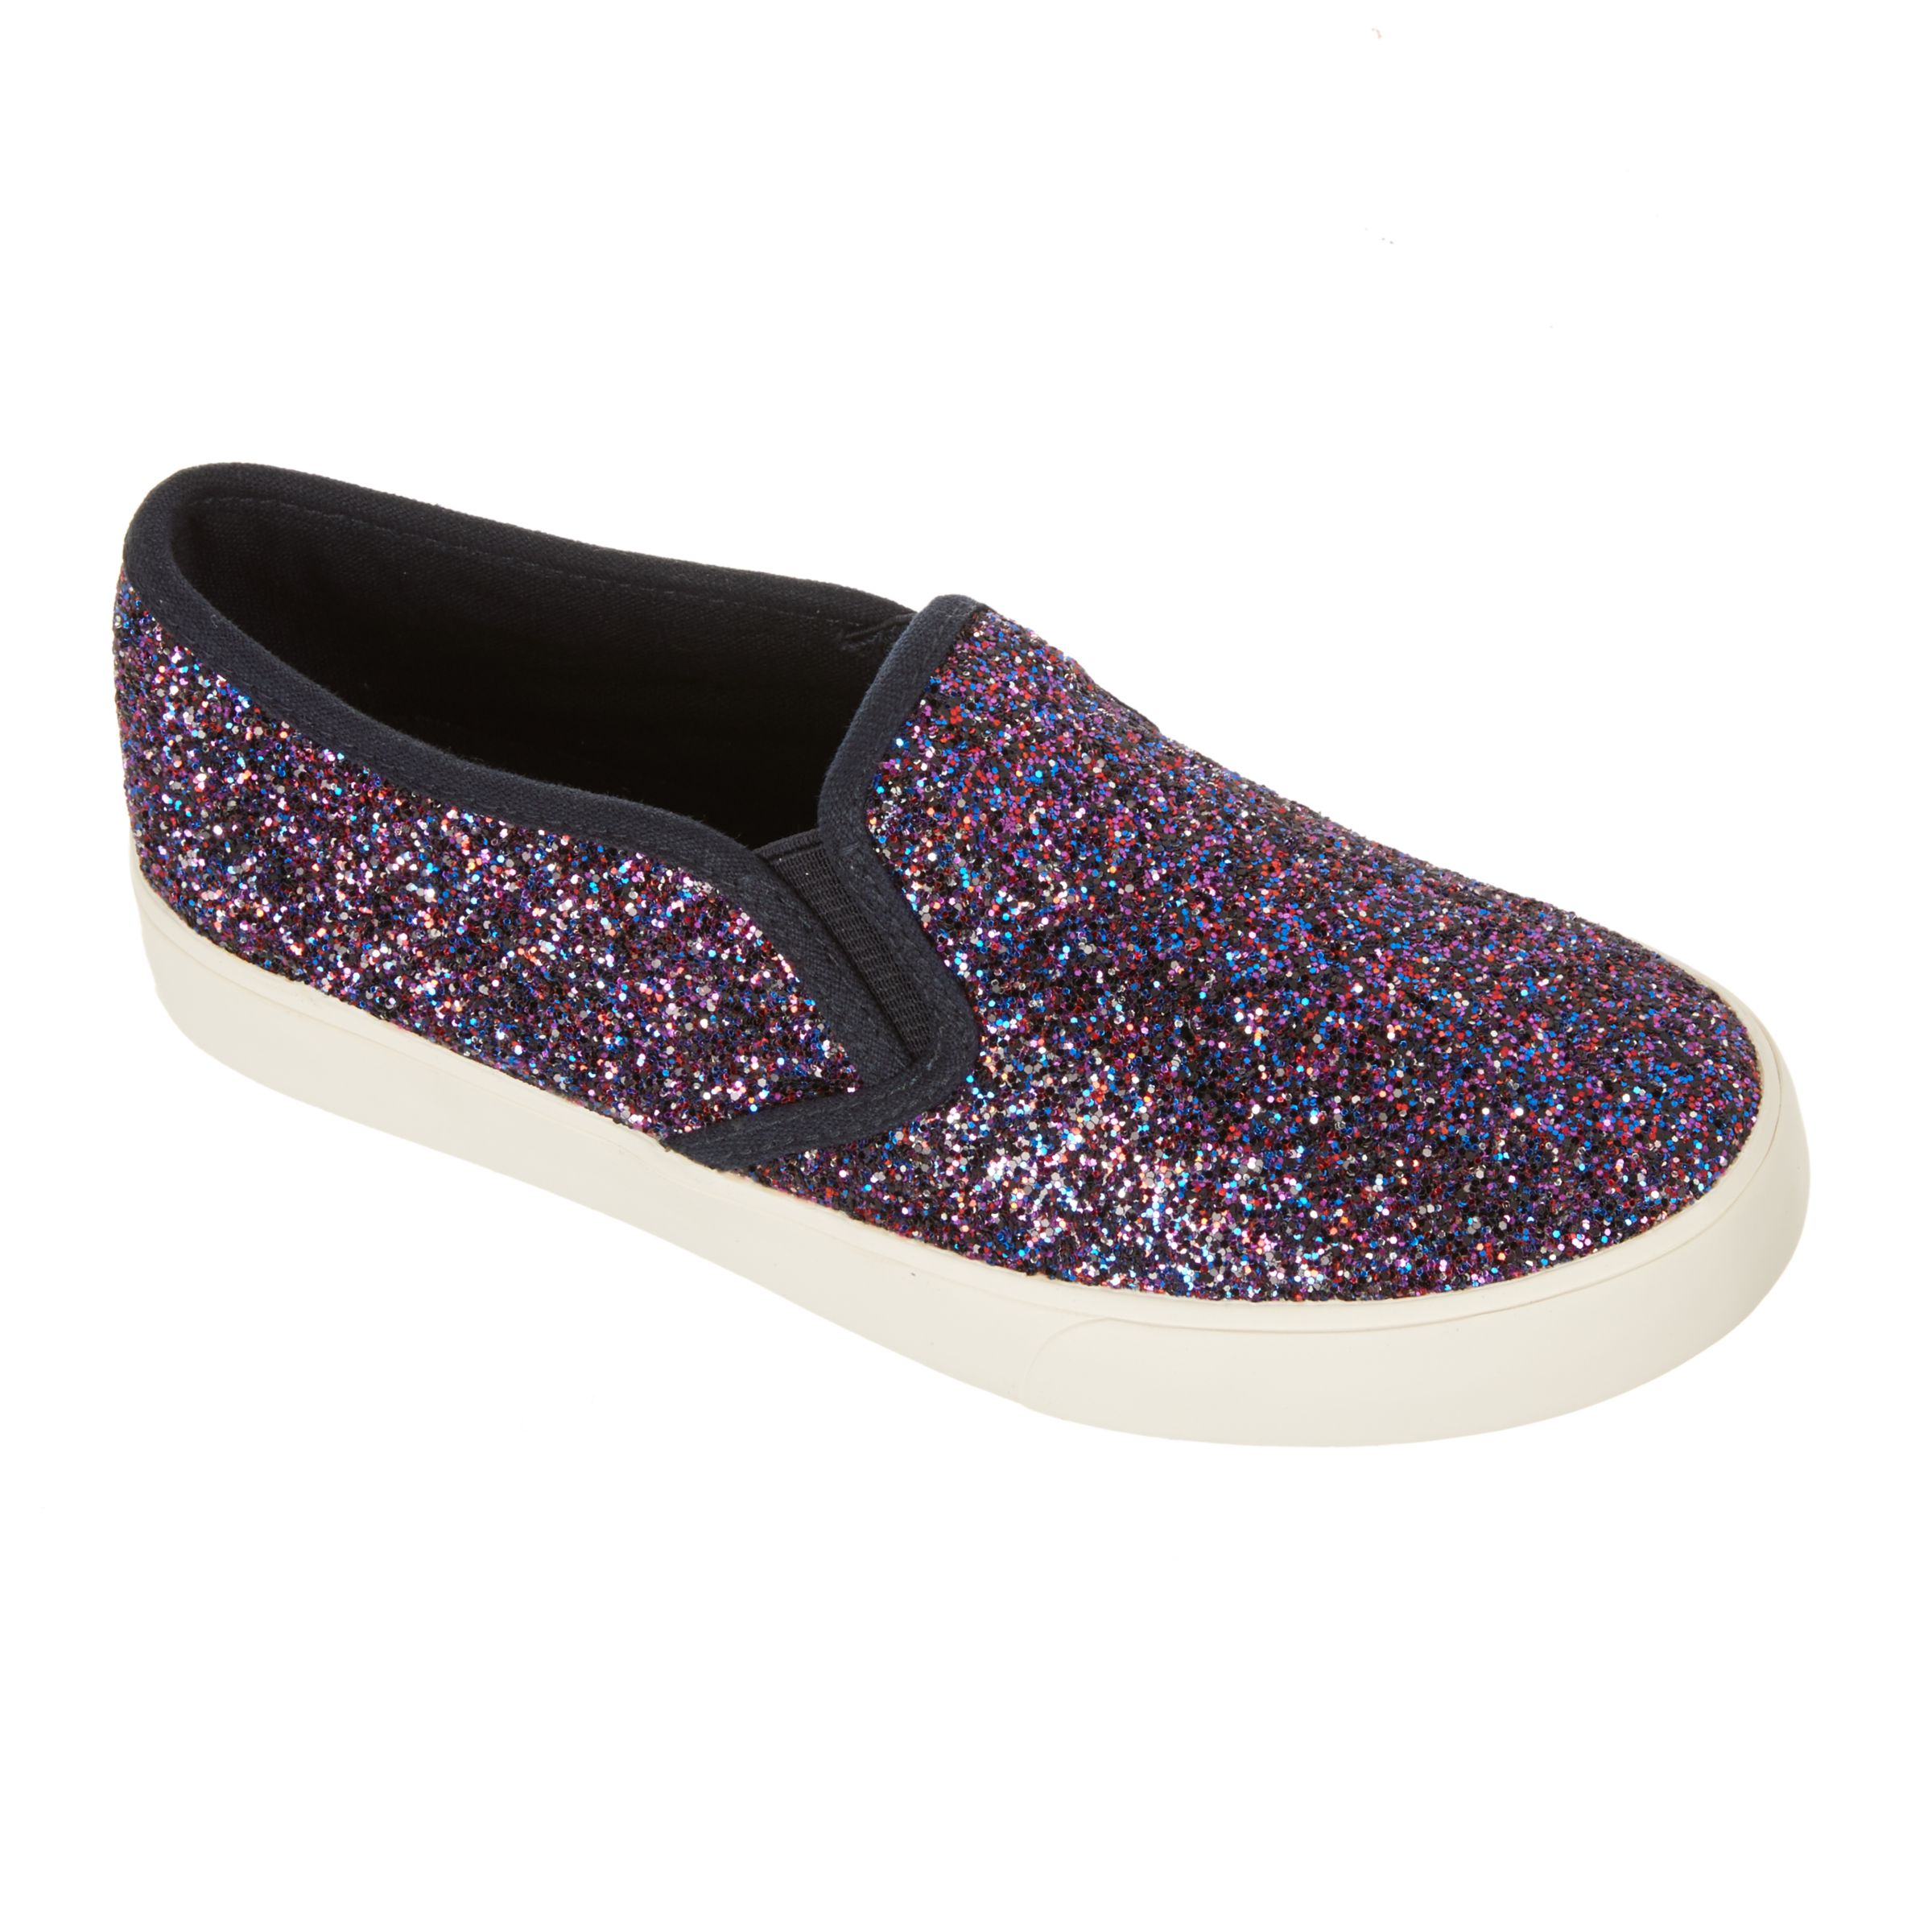 John Lewis & Partners Children's Pheobe Glitter Slip On Shoes, Purple, 2